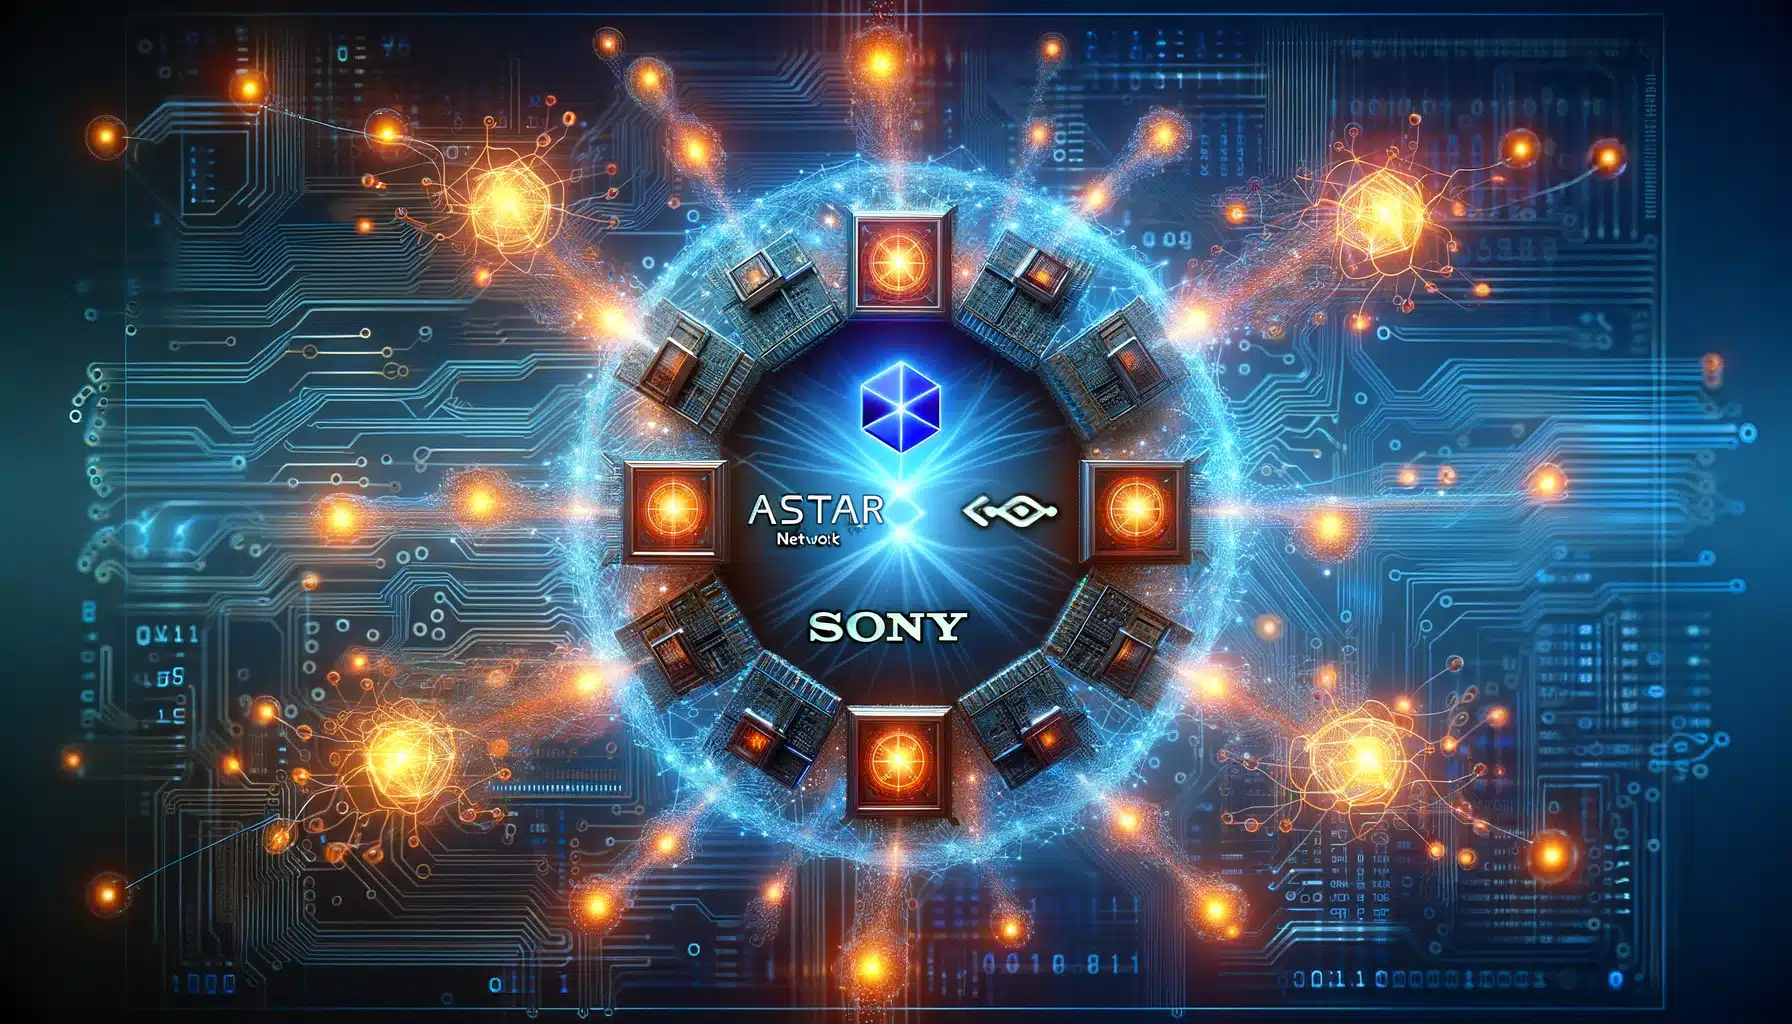 Astar Network ujawnia korzyści nowej sieci blockchain opracowanej we współpracy z Sony